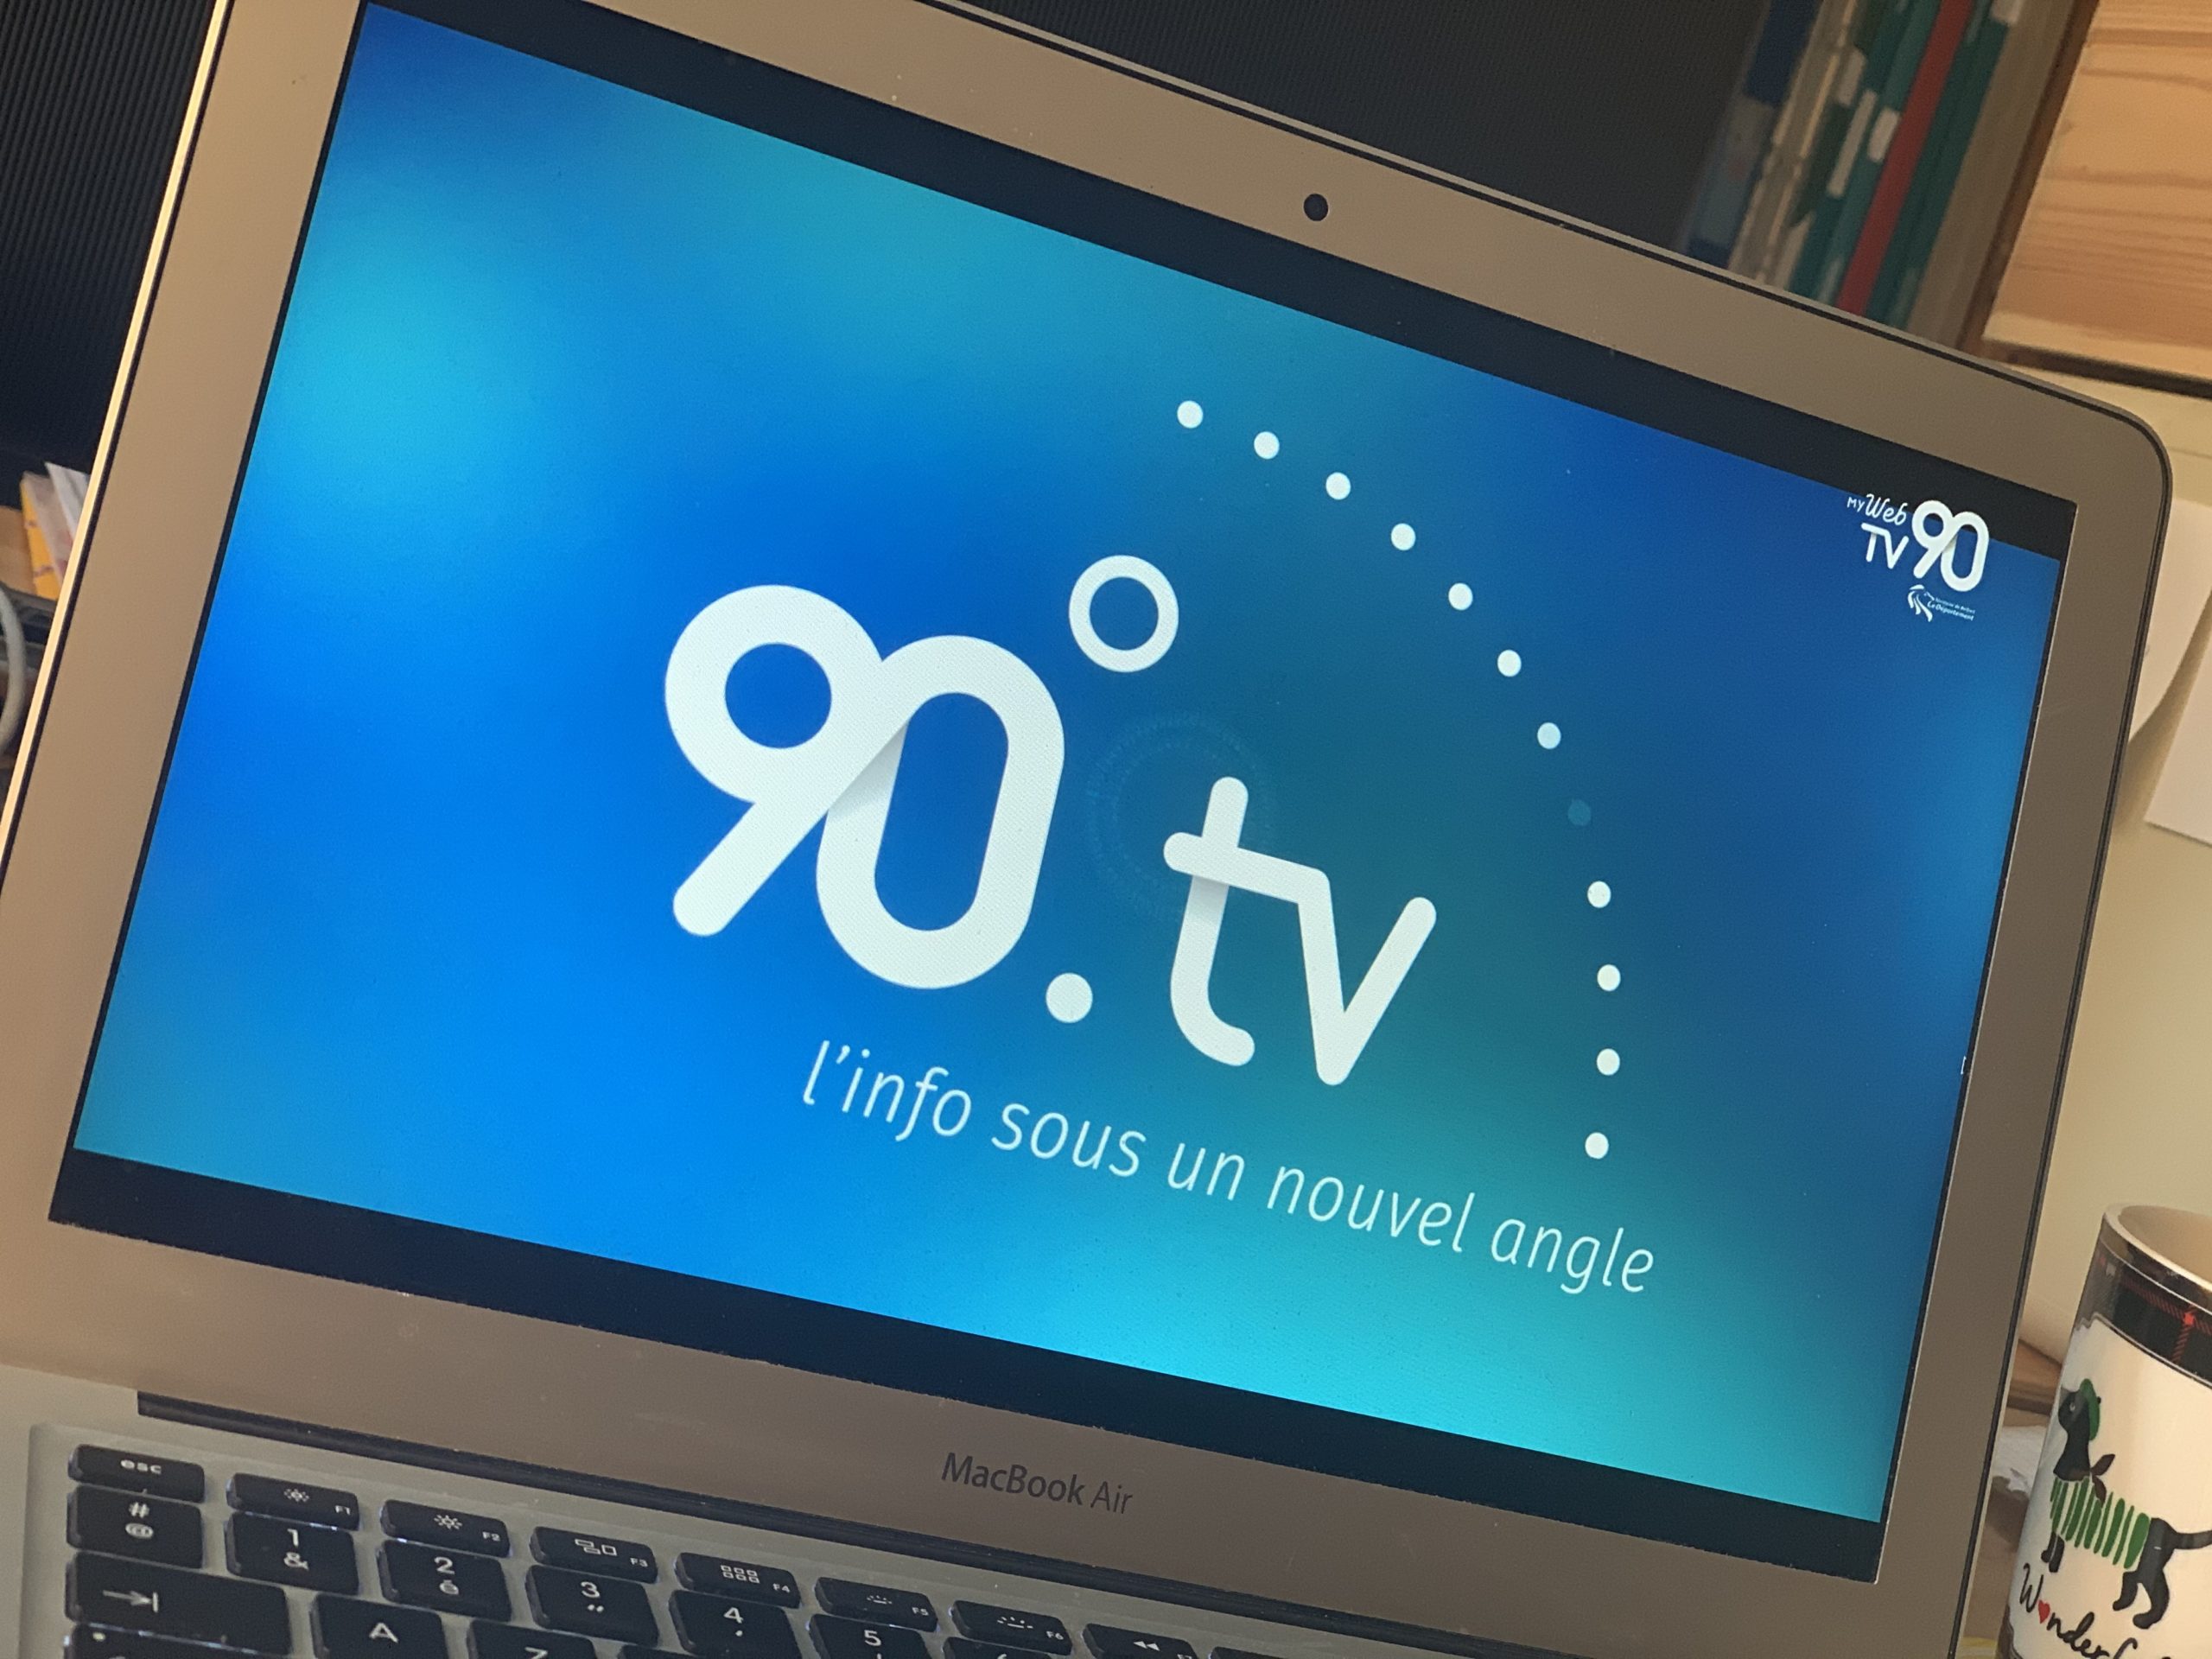 Le conseil départemental du Territoire de Belfort a lancé sa Web TV, My Web TV 90, en décembre 2020.